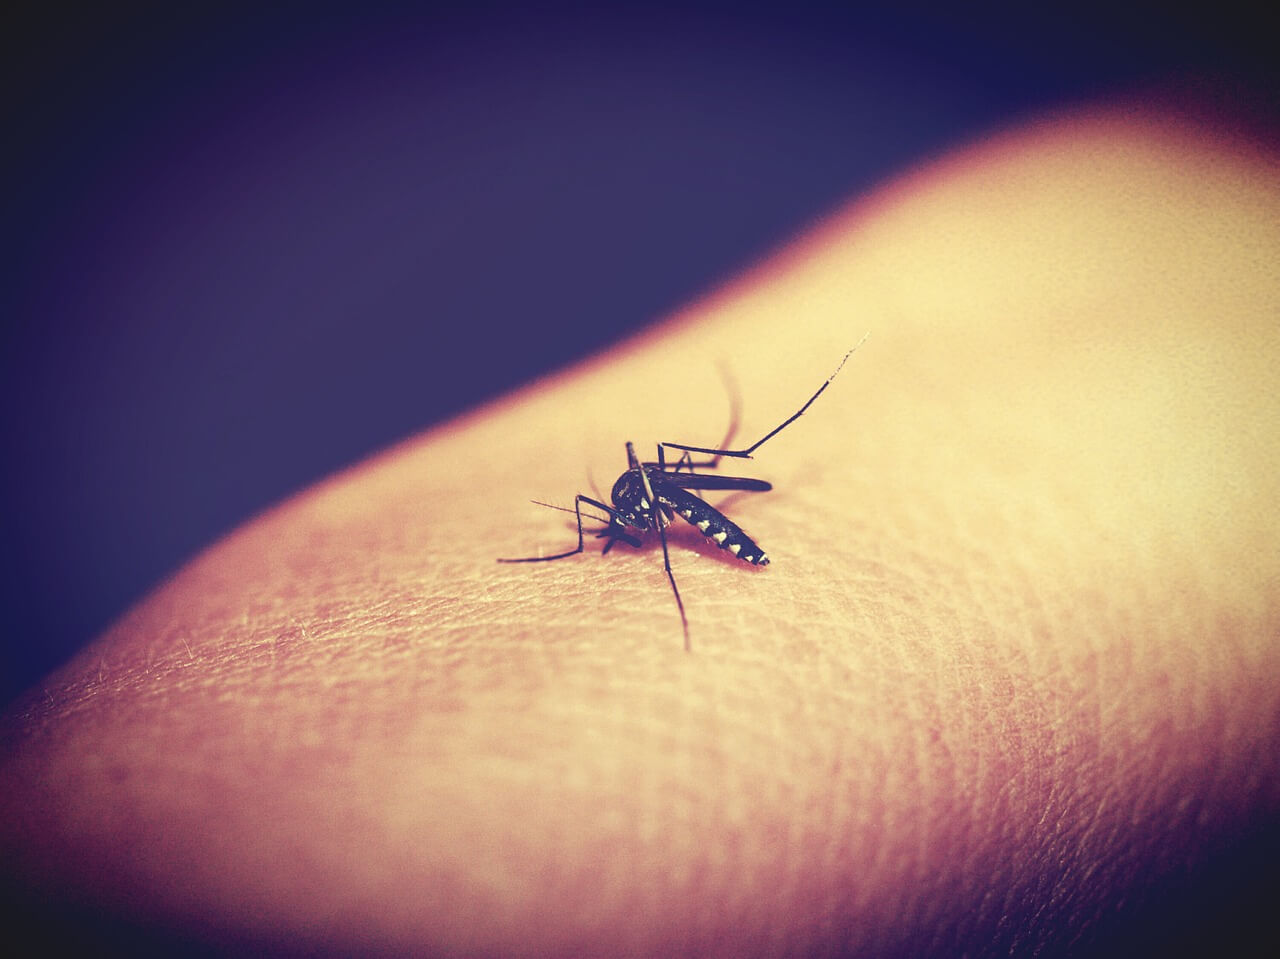 mosquito-multicomponent-virus